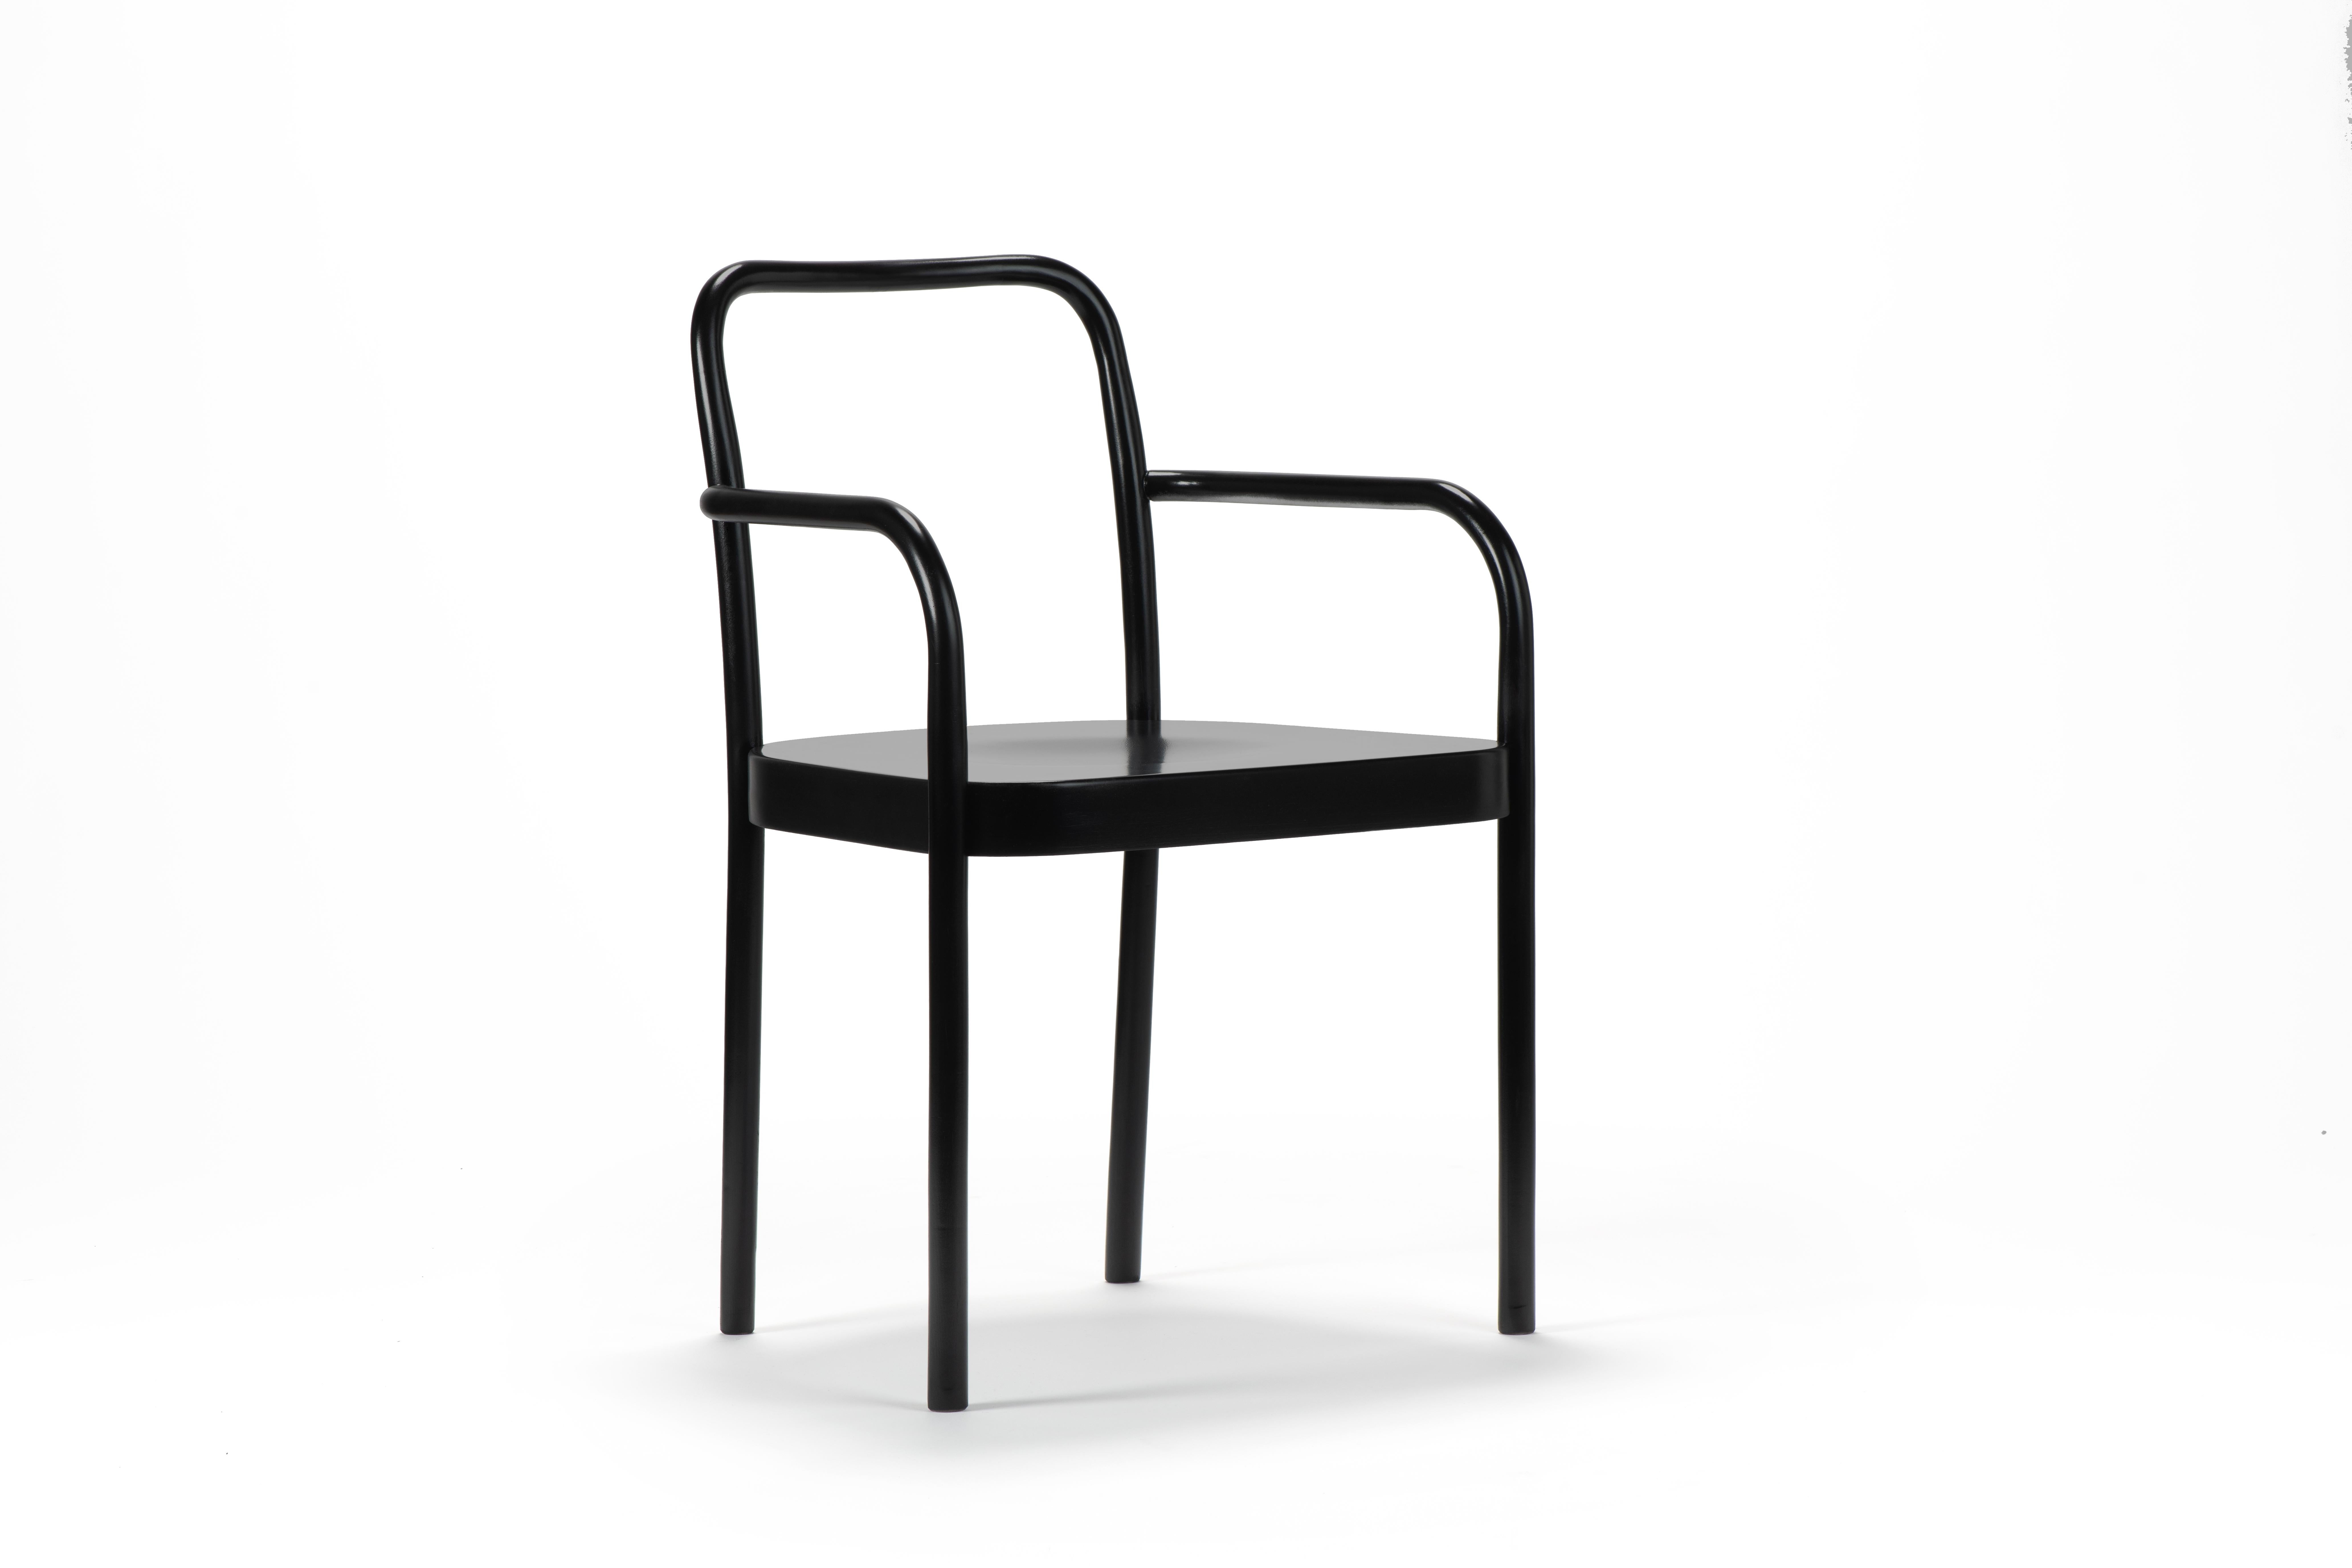 Le style rigoureux de Michael Anastassiades définit la nouvelle chaise SUGILOO en bois courbé avec assise en bois ou rembourrée, proposée avec et sans dossier en bois. Une proposition résolument contemporaine dans sa forme pure et essentielle : la